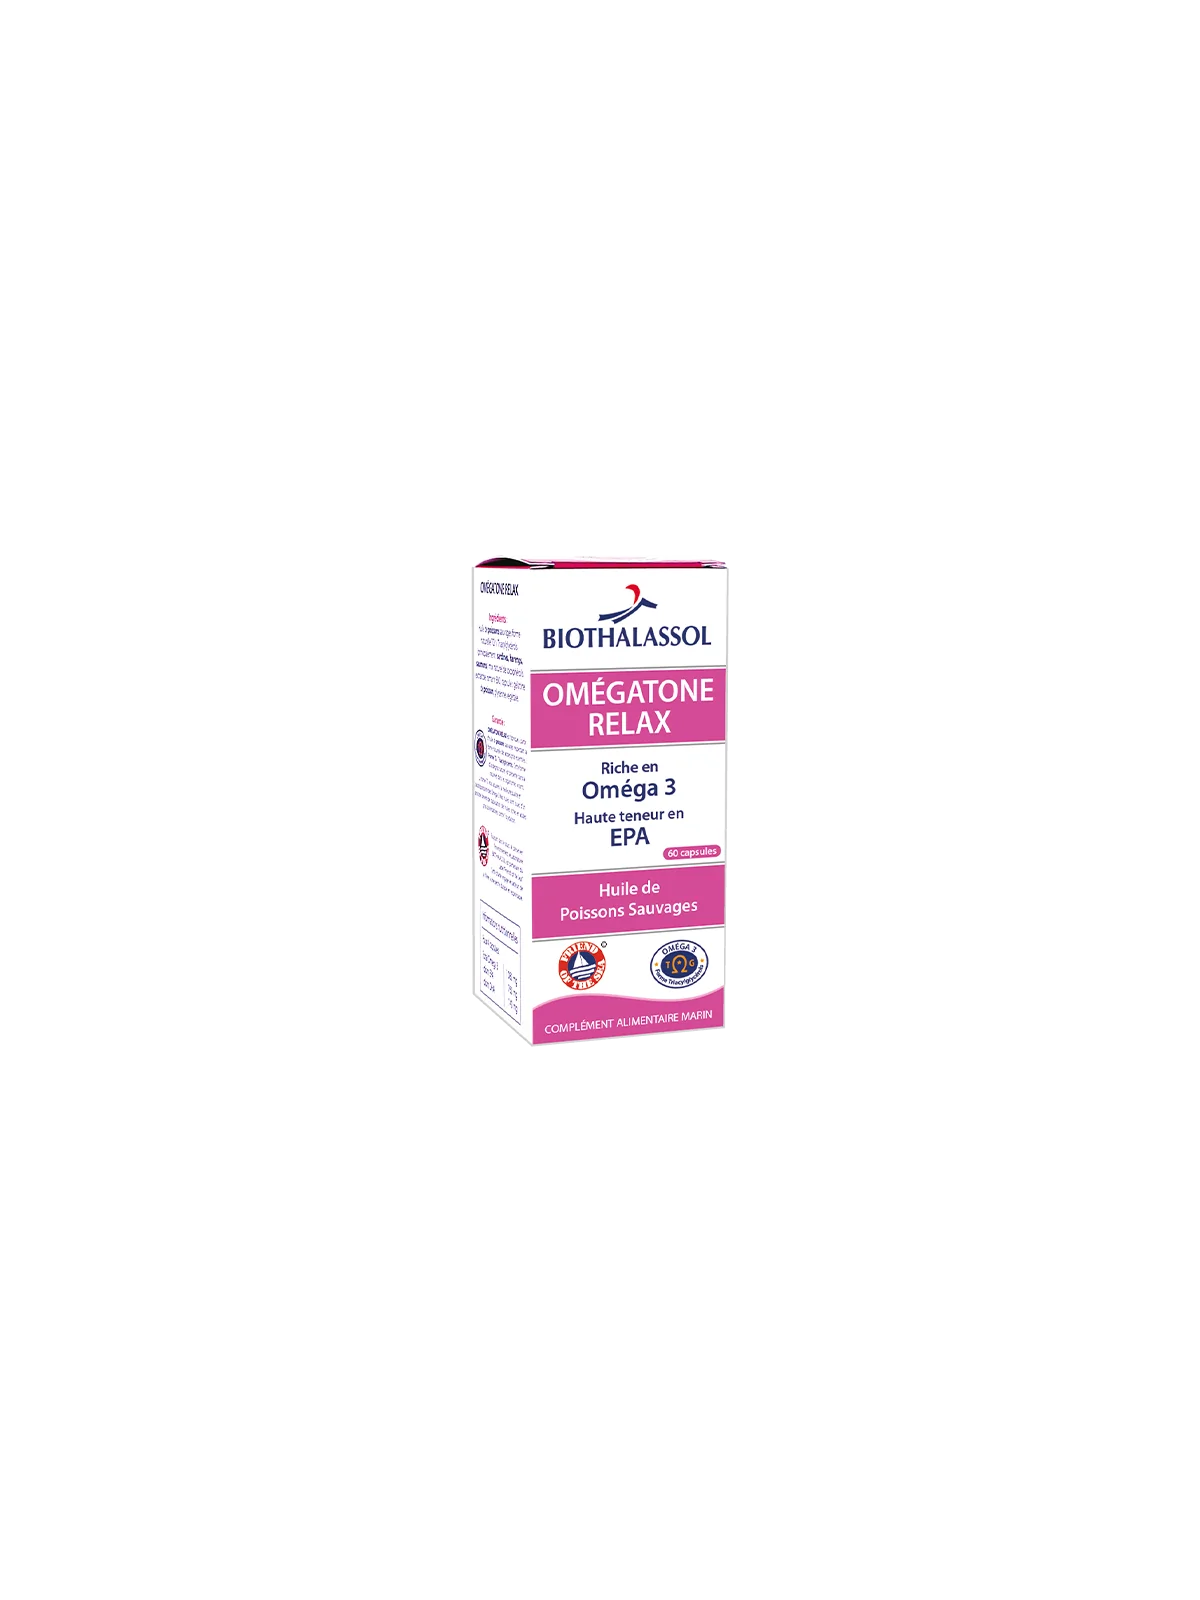 Omegatone Relax - omega 3 Equilibrio emocional Biothalassol